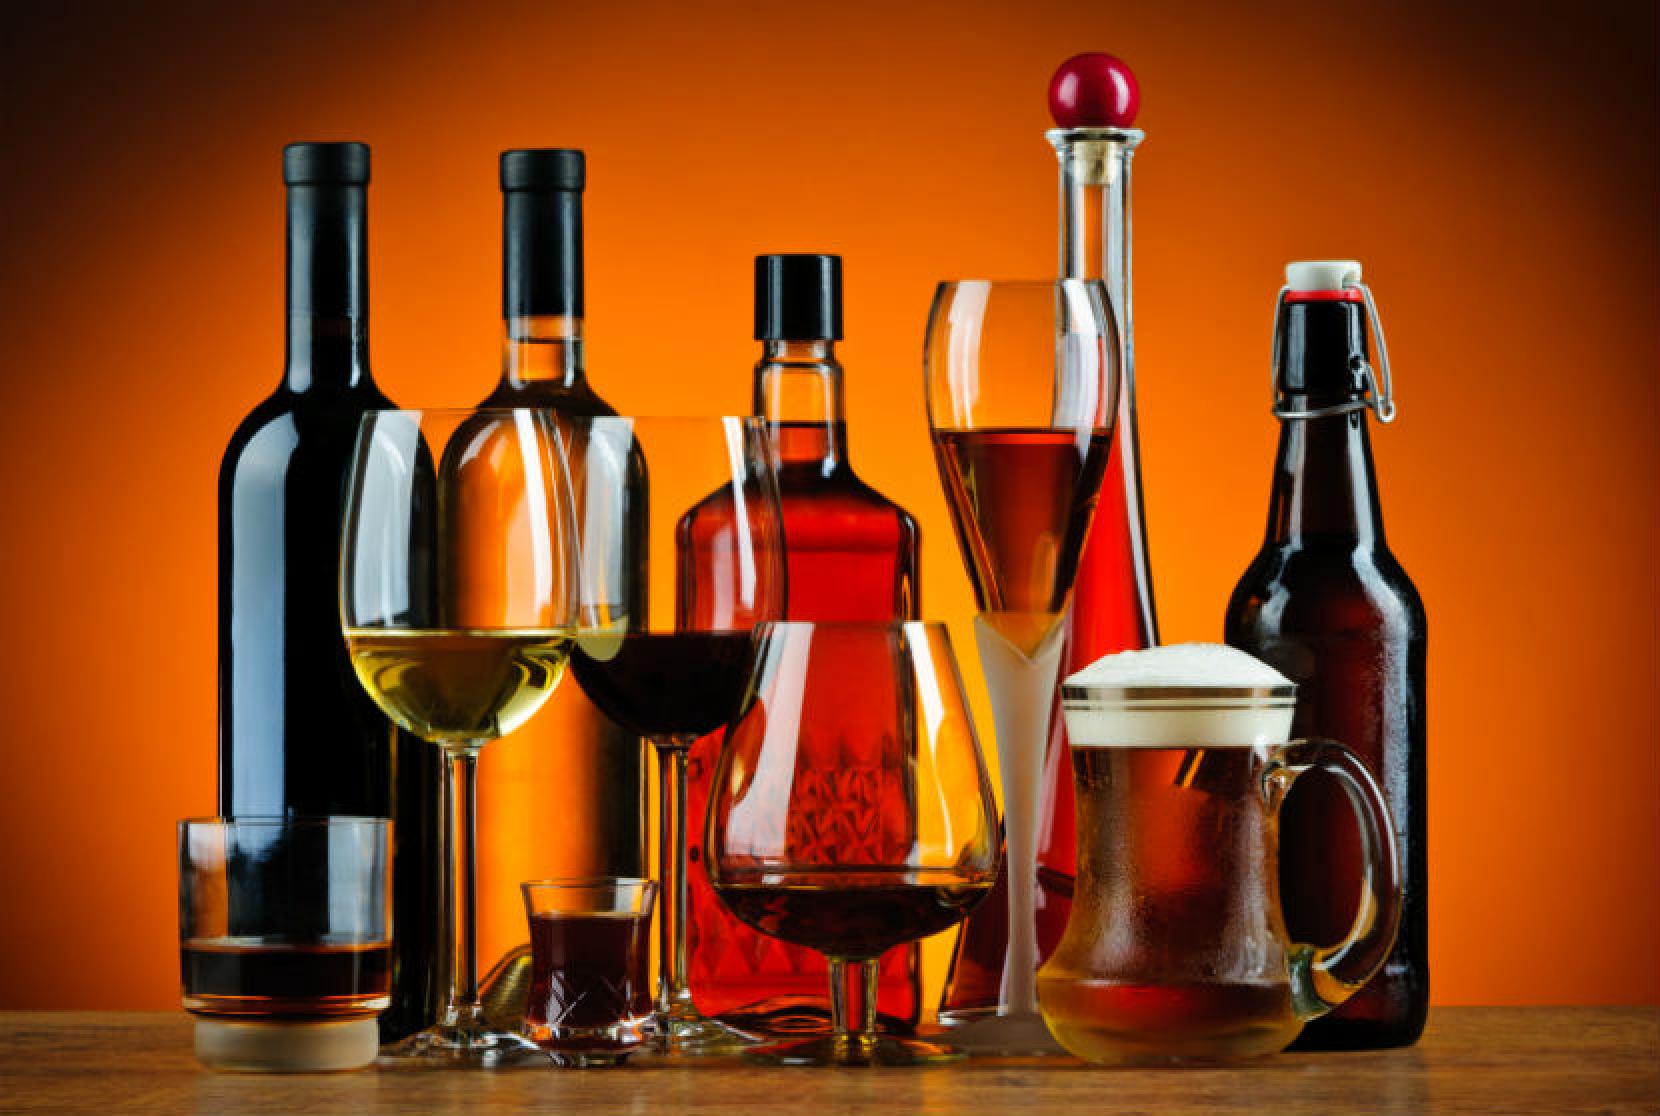 Vienas 15 metų ir vyresnis Lietuvos gyventojas pernai suvartojo vidutiniškai 11,1 litro absoliutaus alkoholio – 0,1 litro mažiau nei 2018 metais (11,2 litro), išankstinius duomenis pranešė Statistikos departamentas.